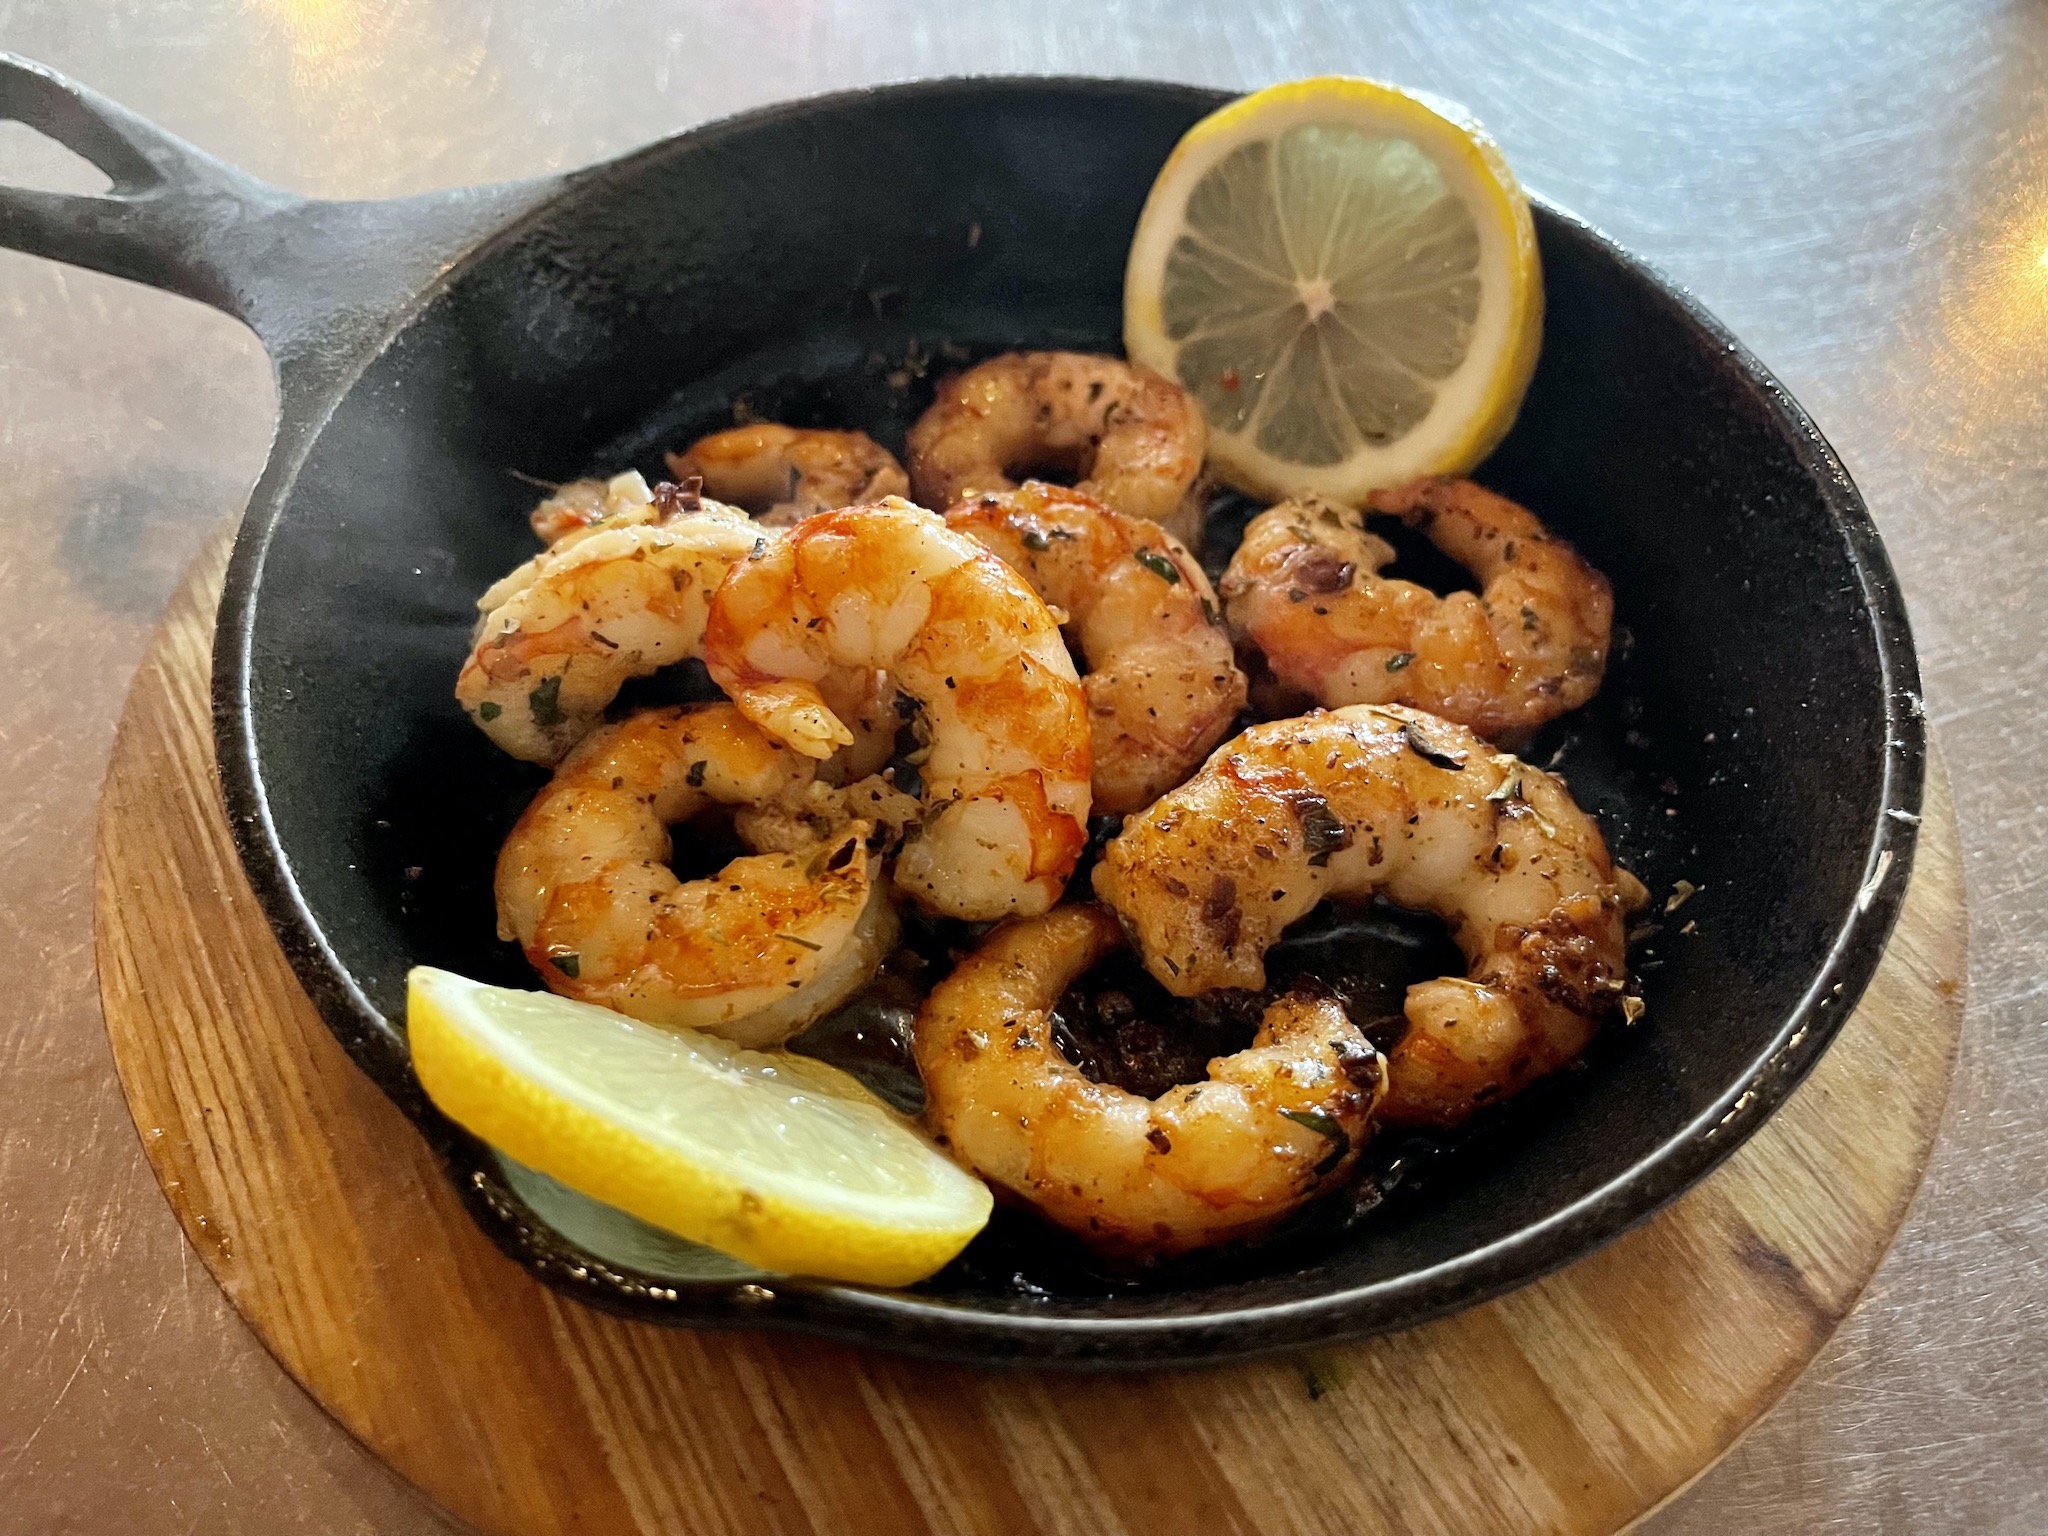 Renzo's Gambas - Argentine jumbo shrimp with garlic butter, fresh herbs, and brandy